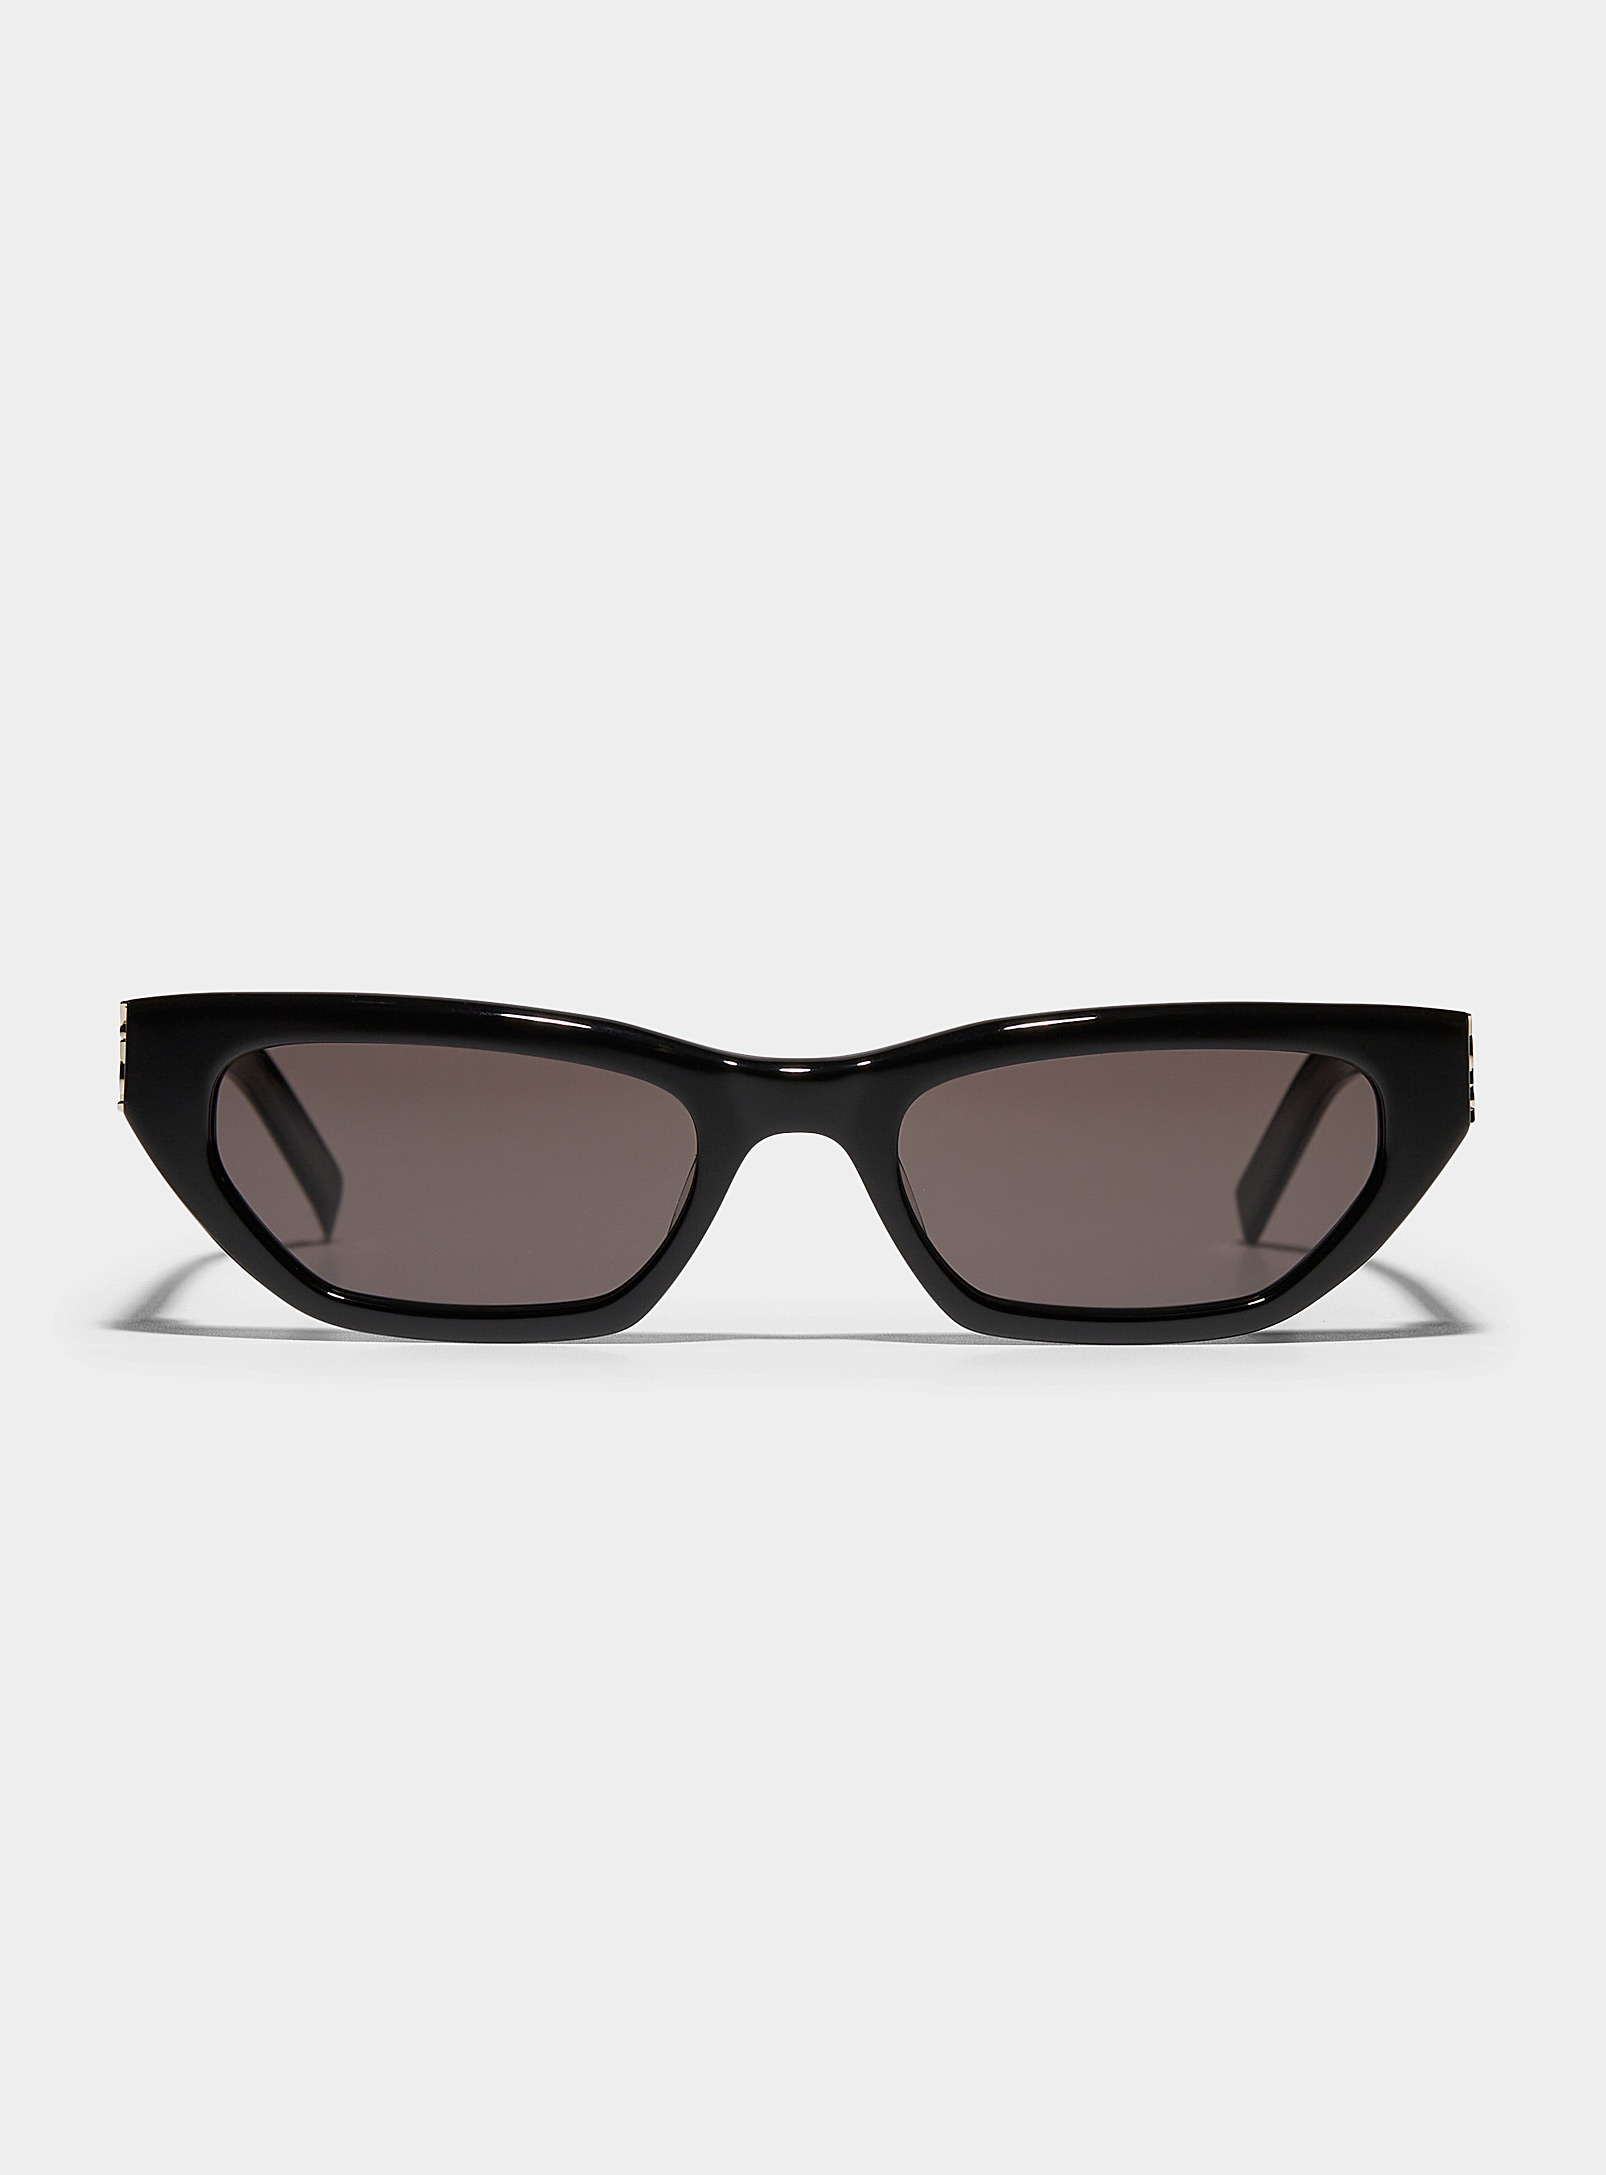 Saint Laurent - Women's Slim angular sunglasses